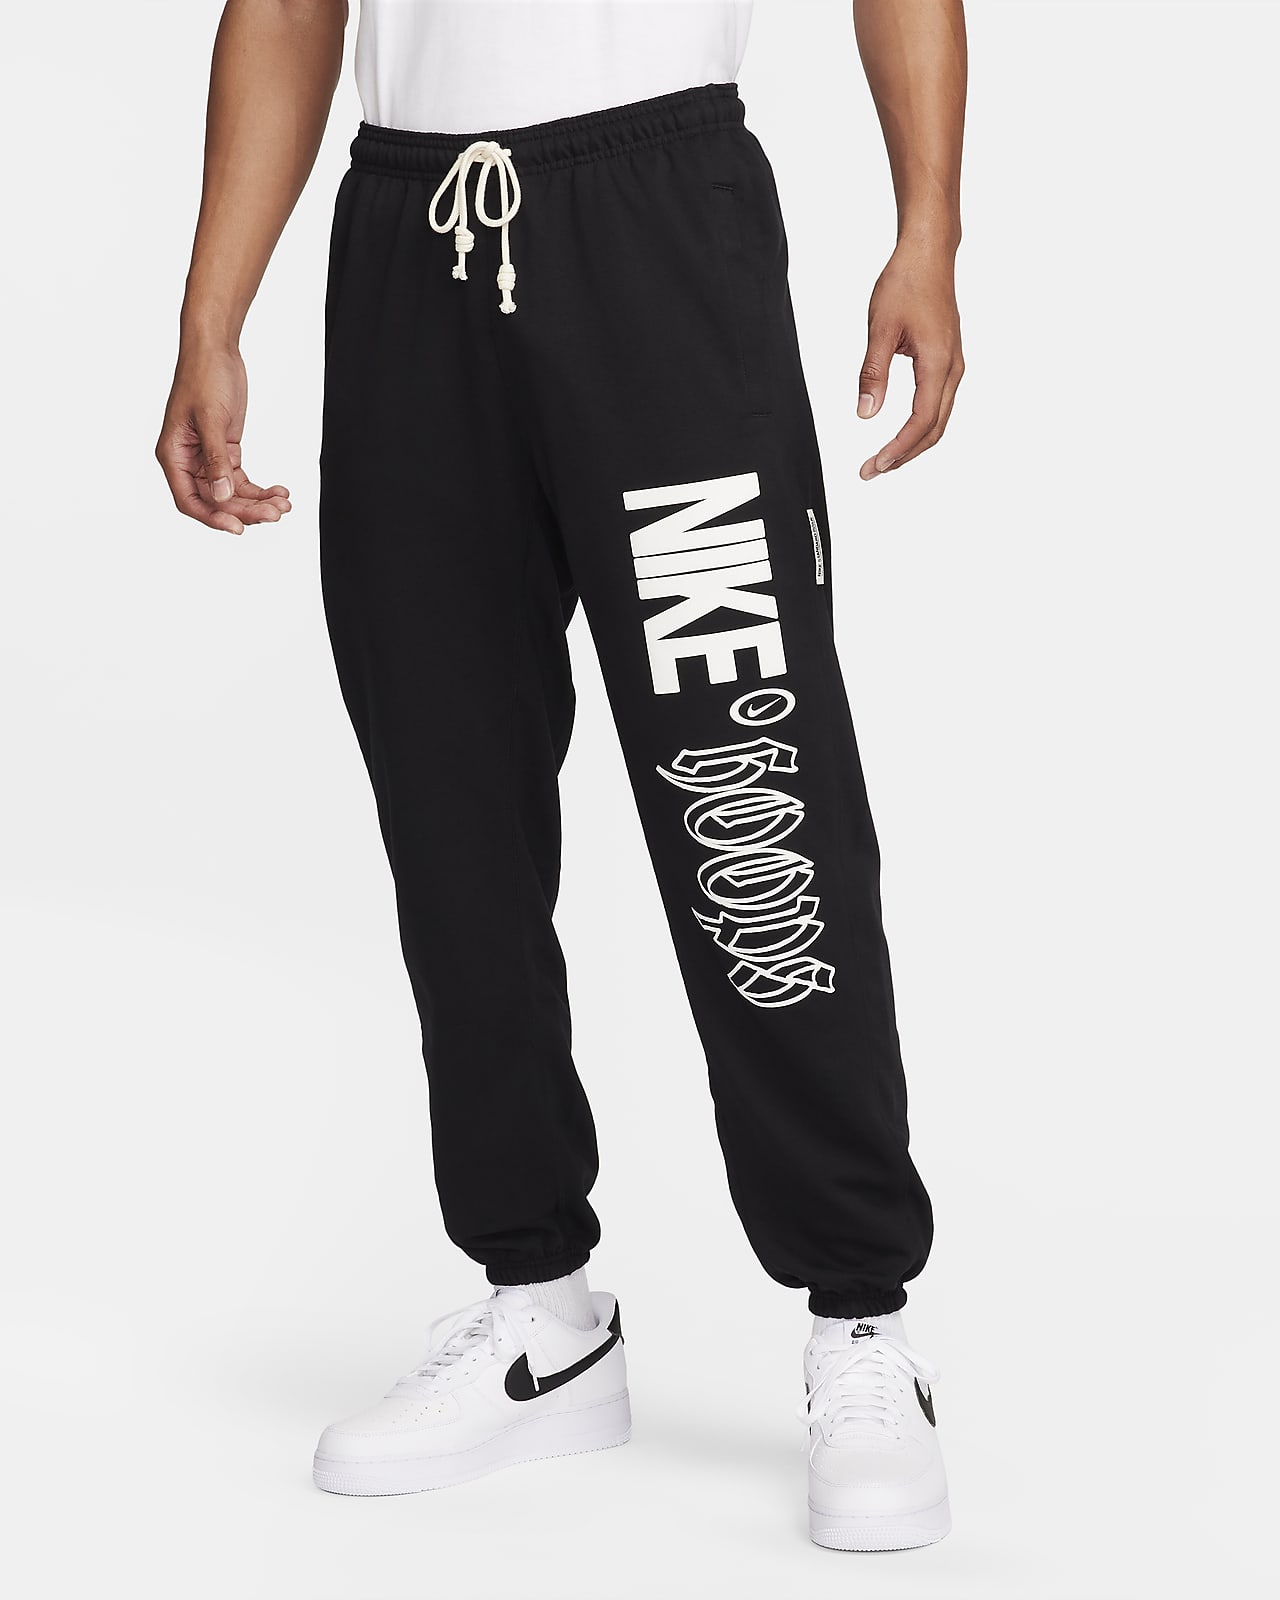 Nike Standard Issue Dri-FIT férfi kosárlabdás nadrág